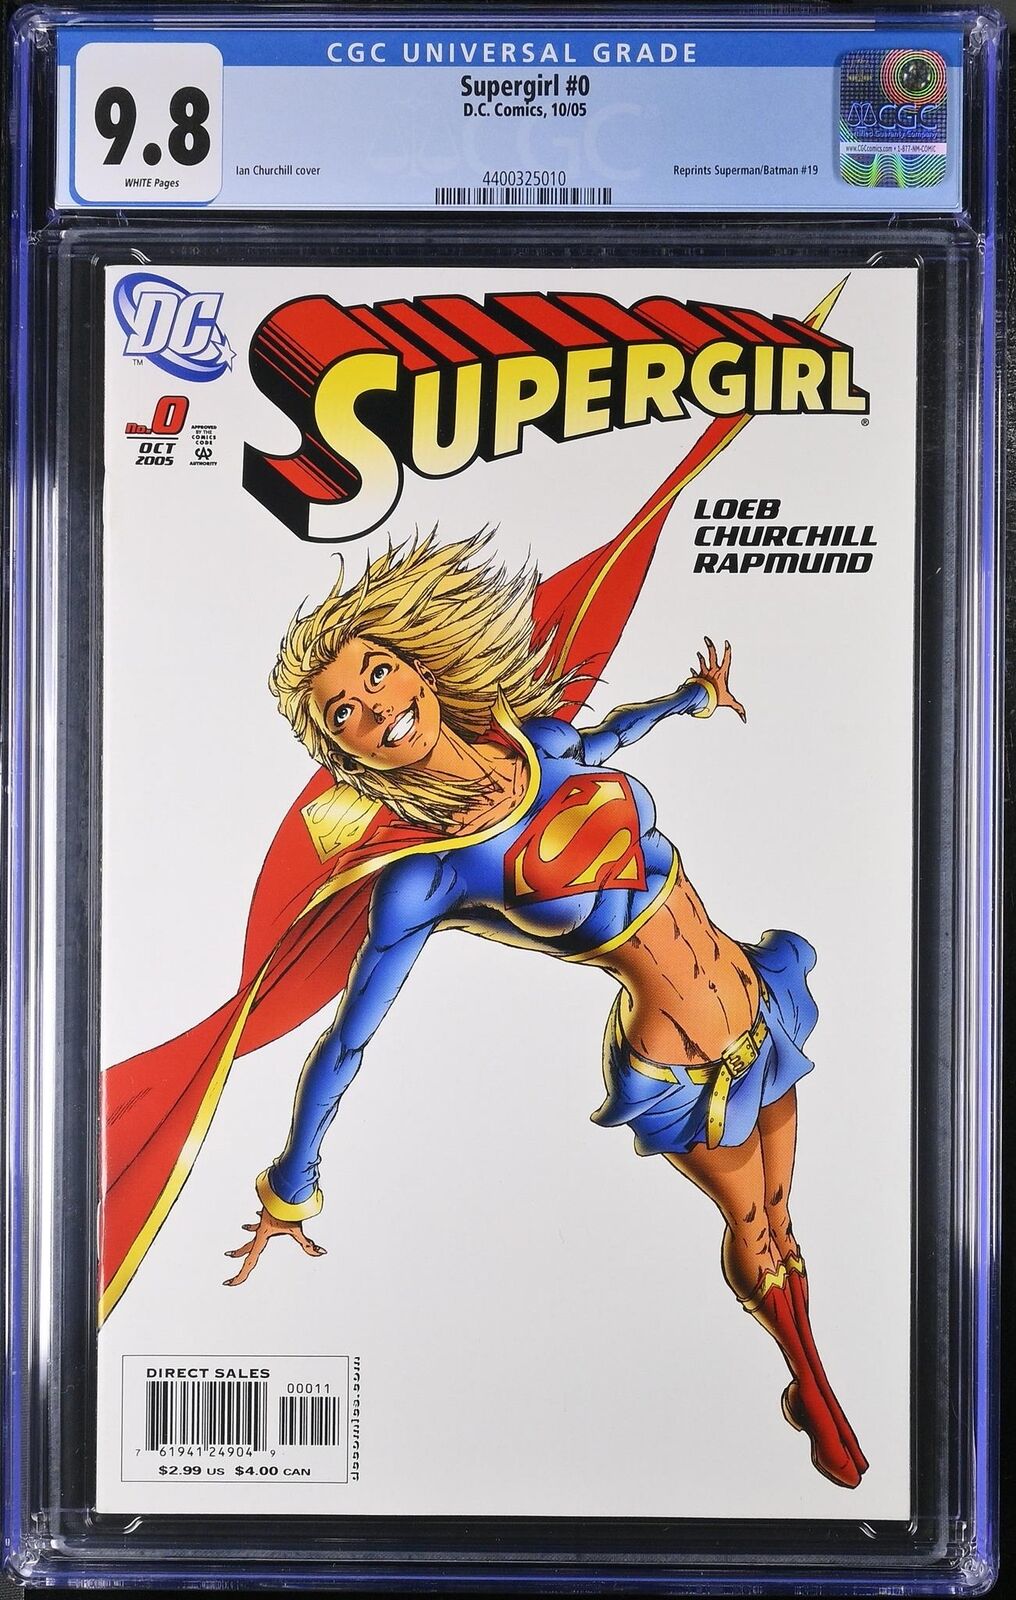 Supergirl 0 CGC 9.8 2005 4400325010 Superman/Batman Reprint #19